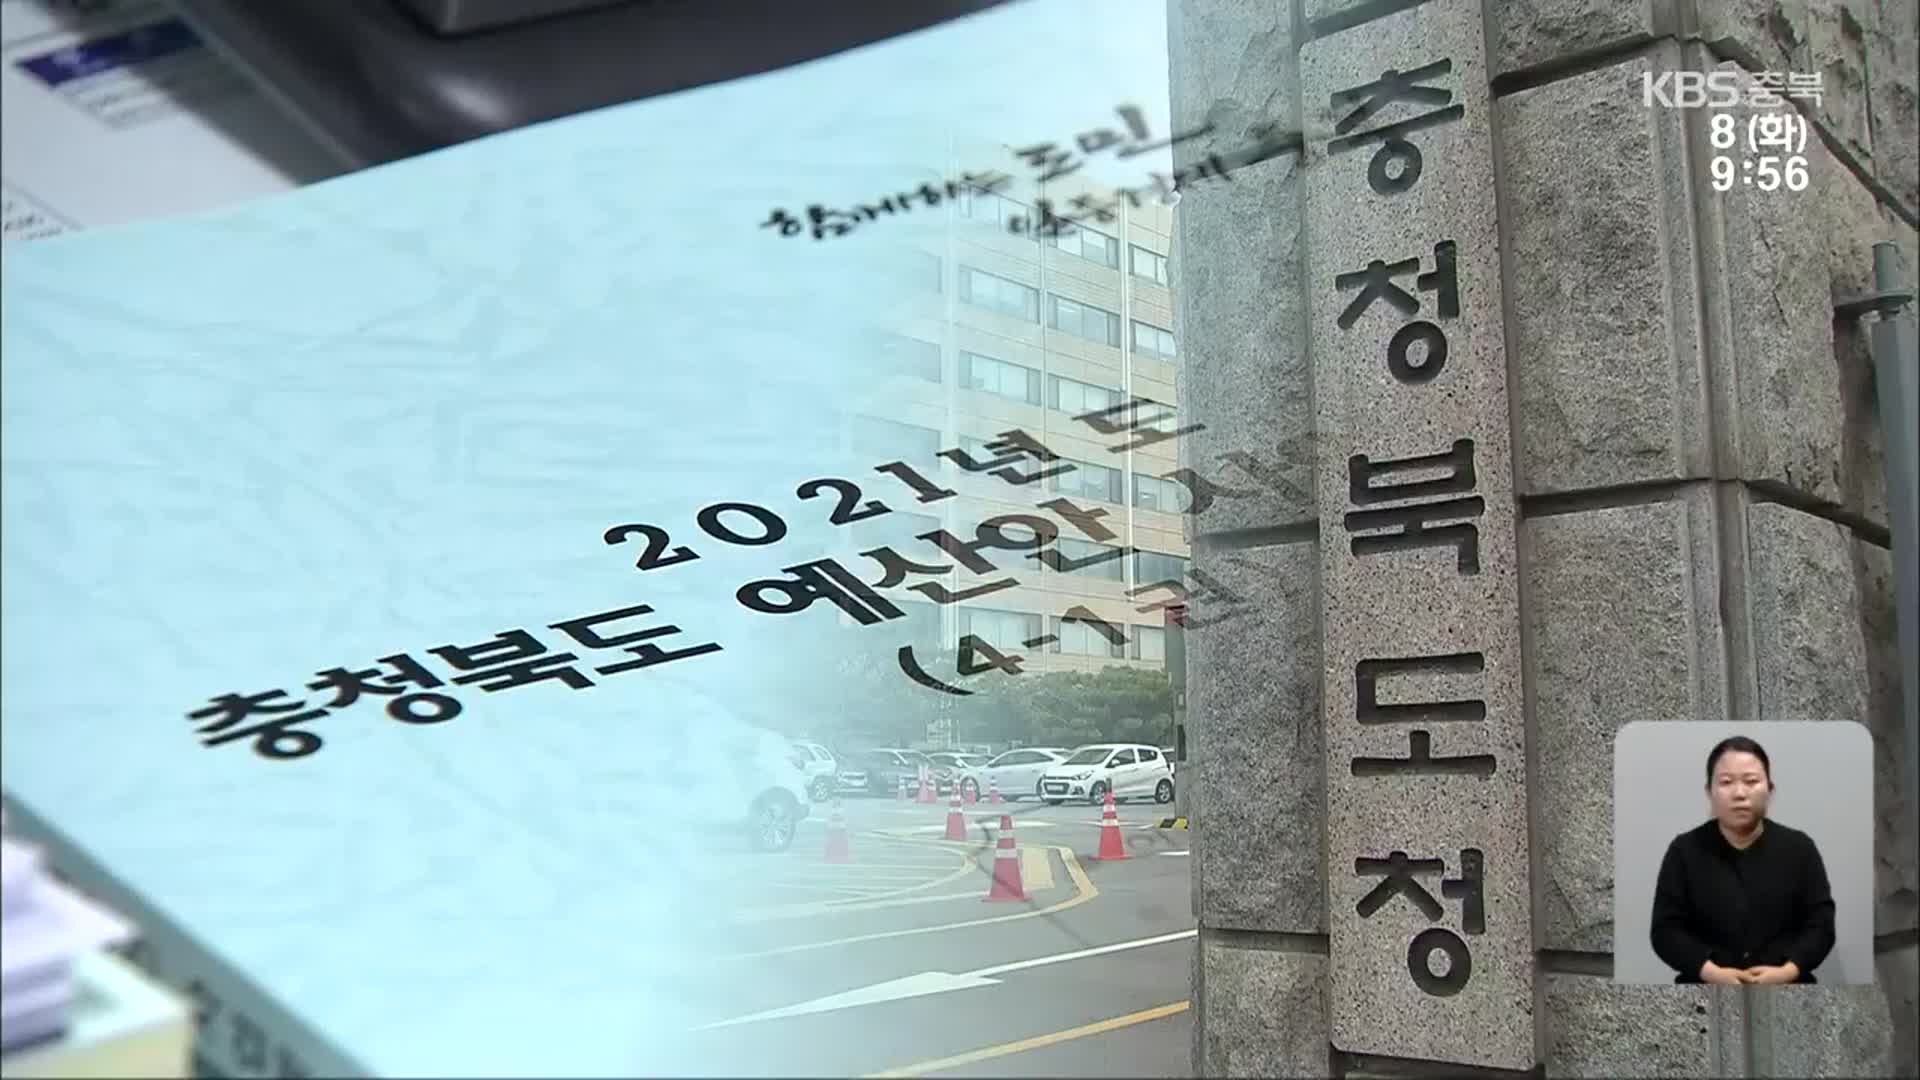 충북도청 버젓이 출입한 절도범…서류 훔친 50대 덜미